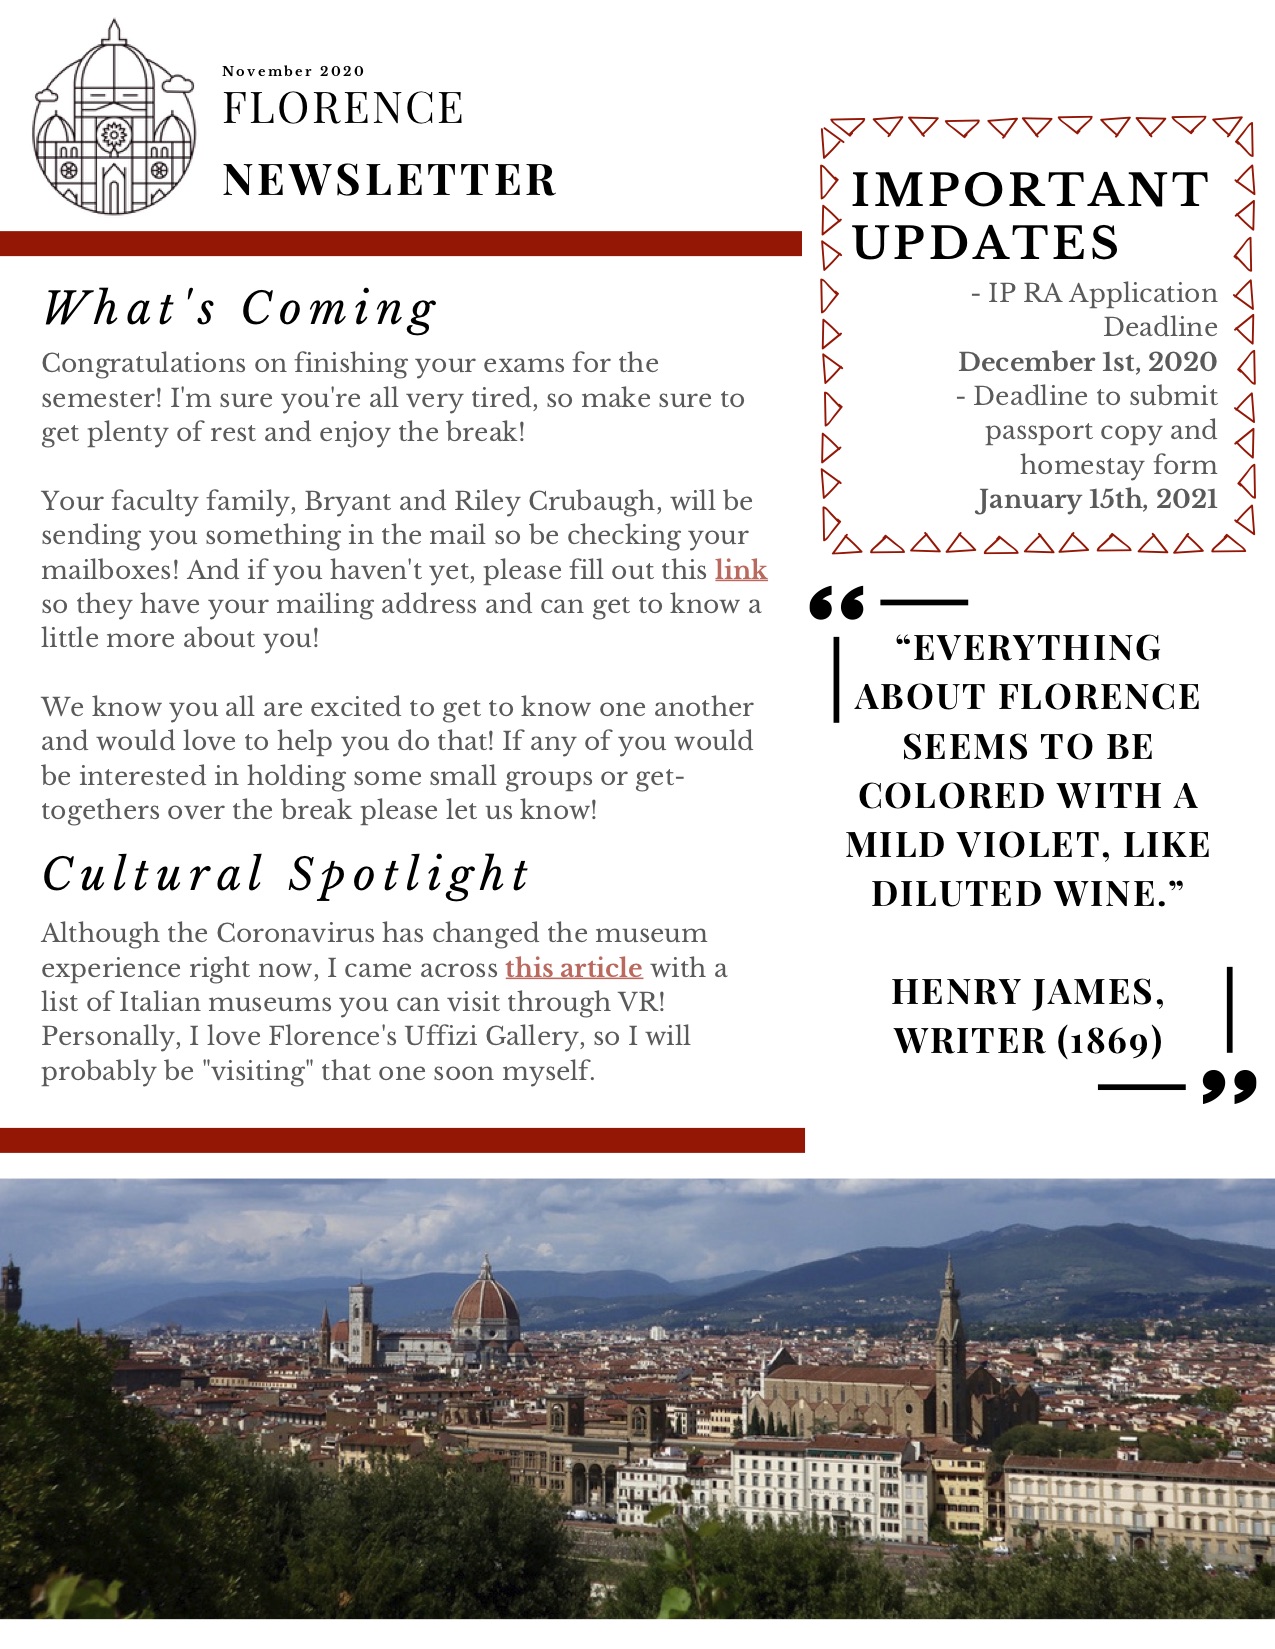 Florence November 2020 Newsletter